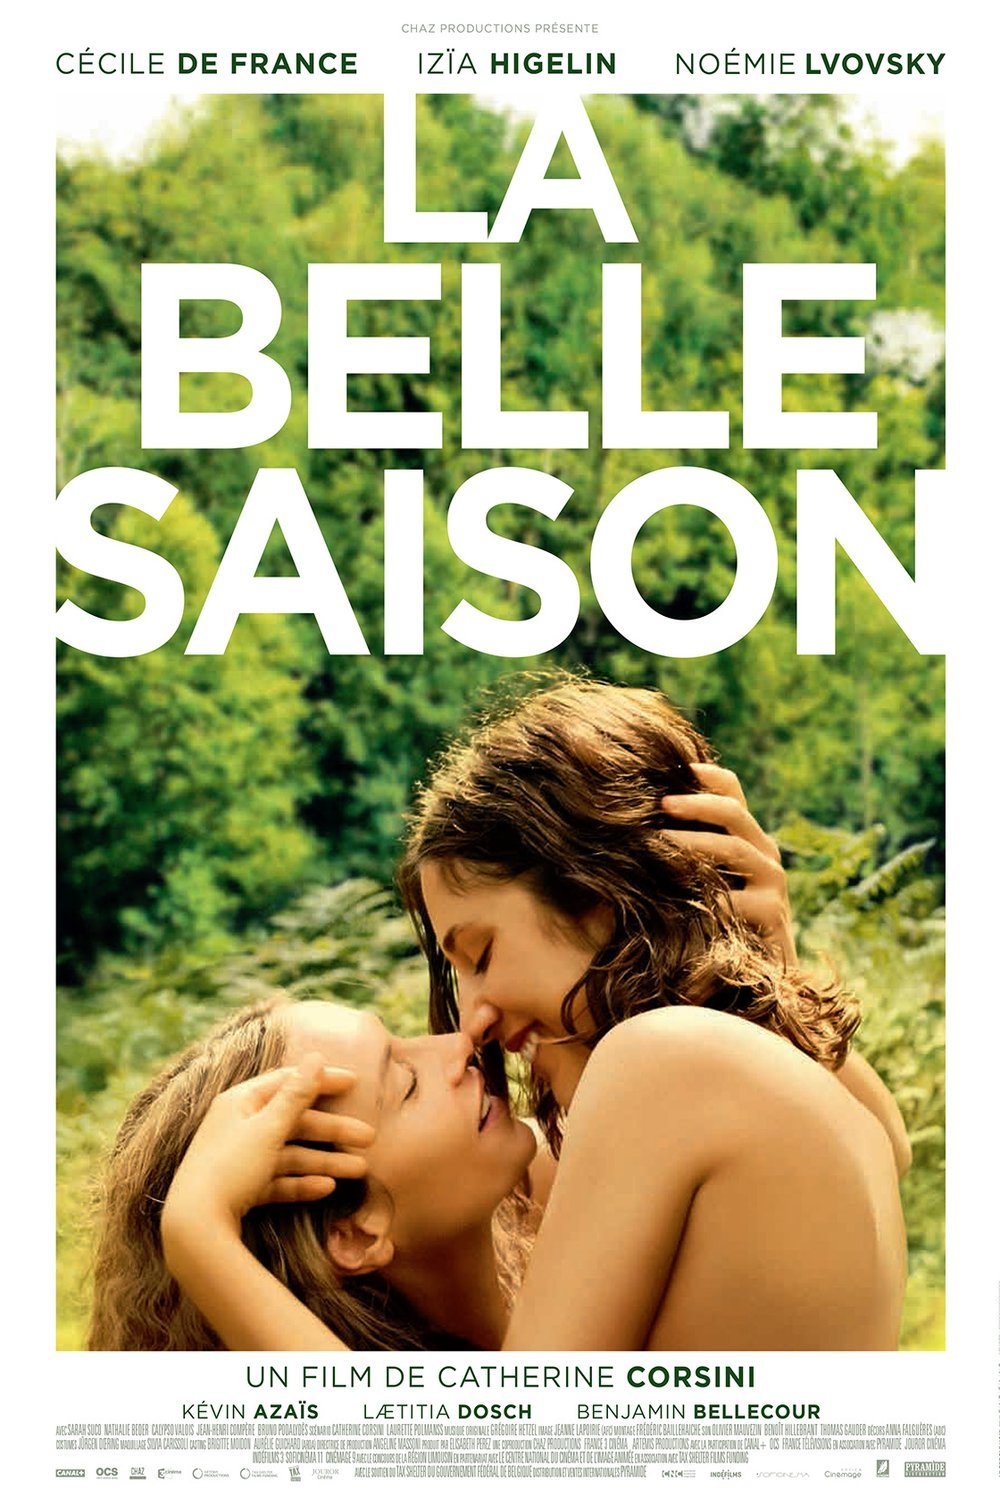 Poster of the movie La Belle saison